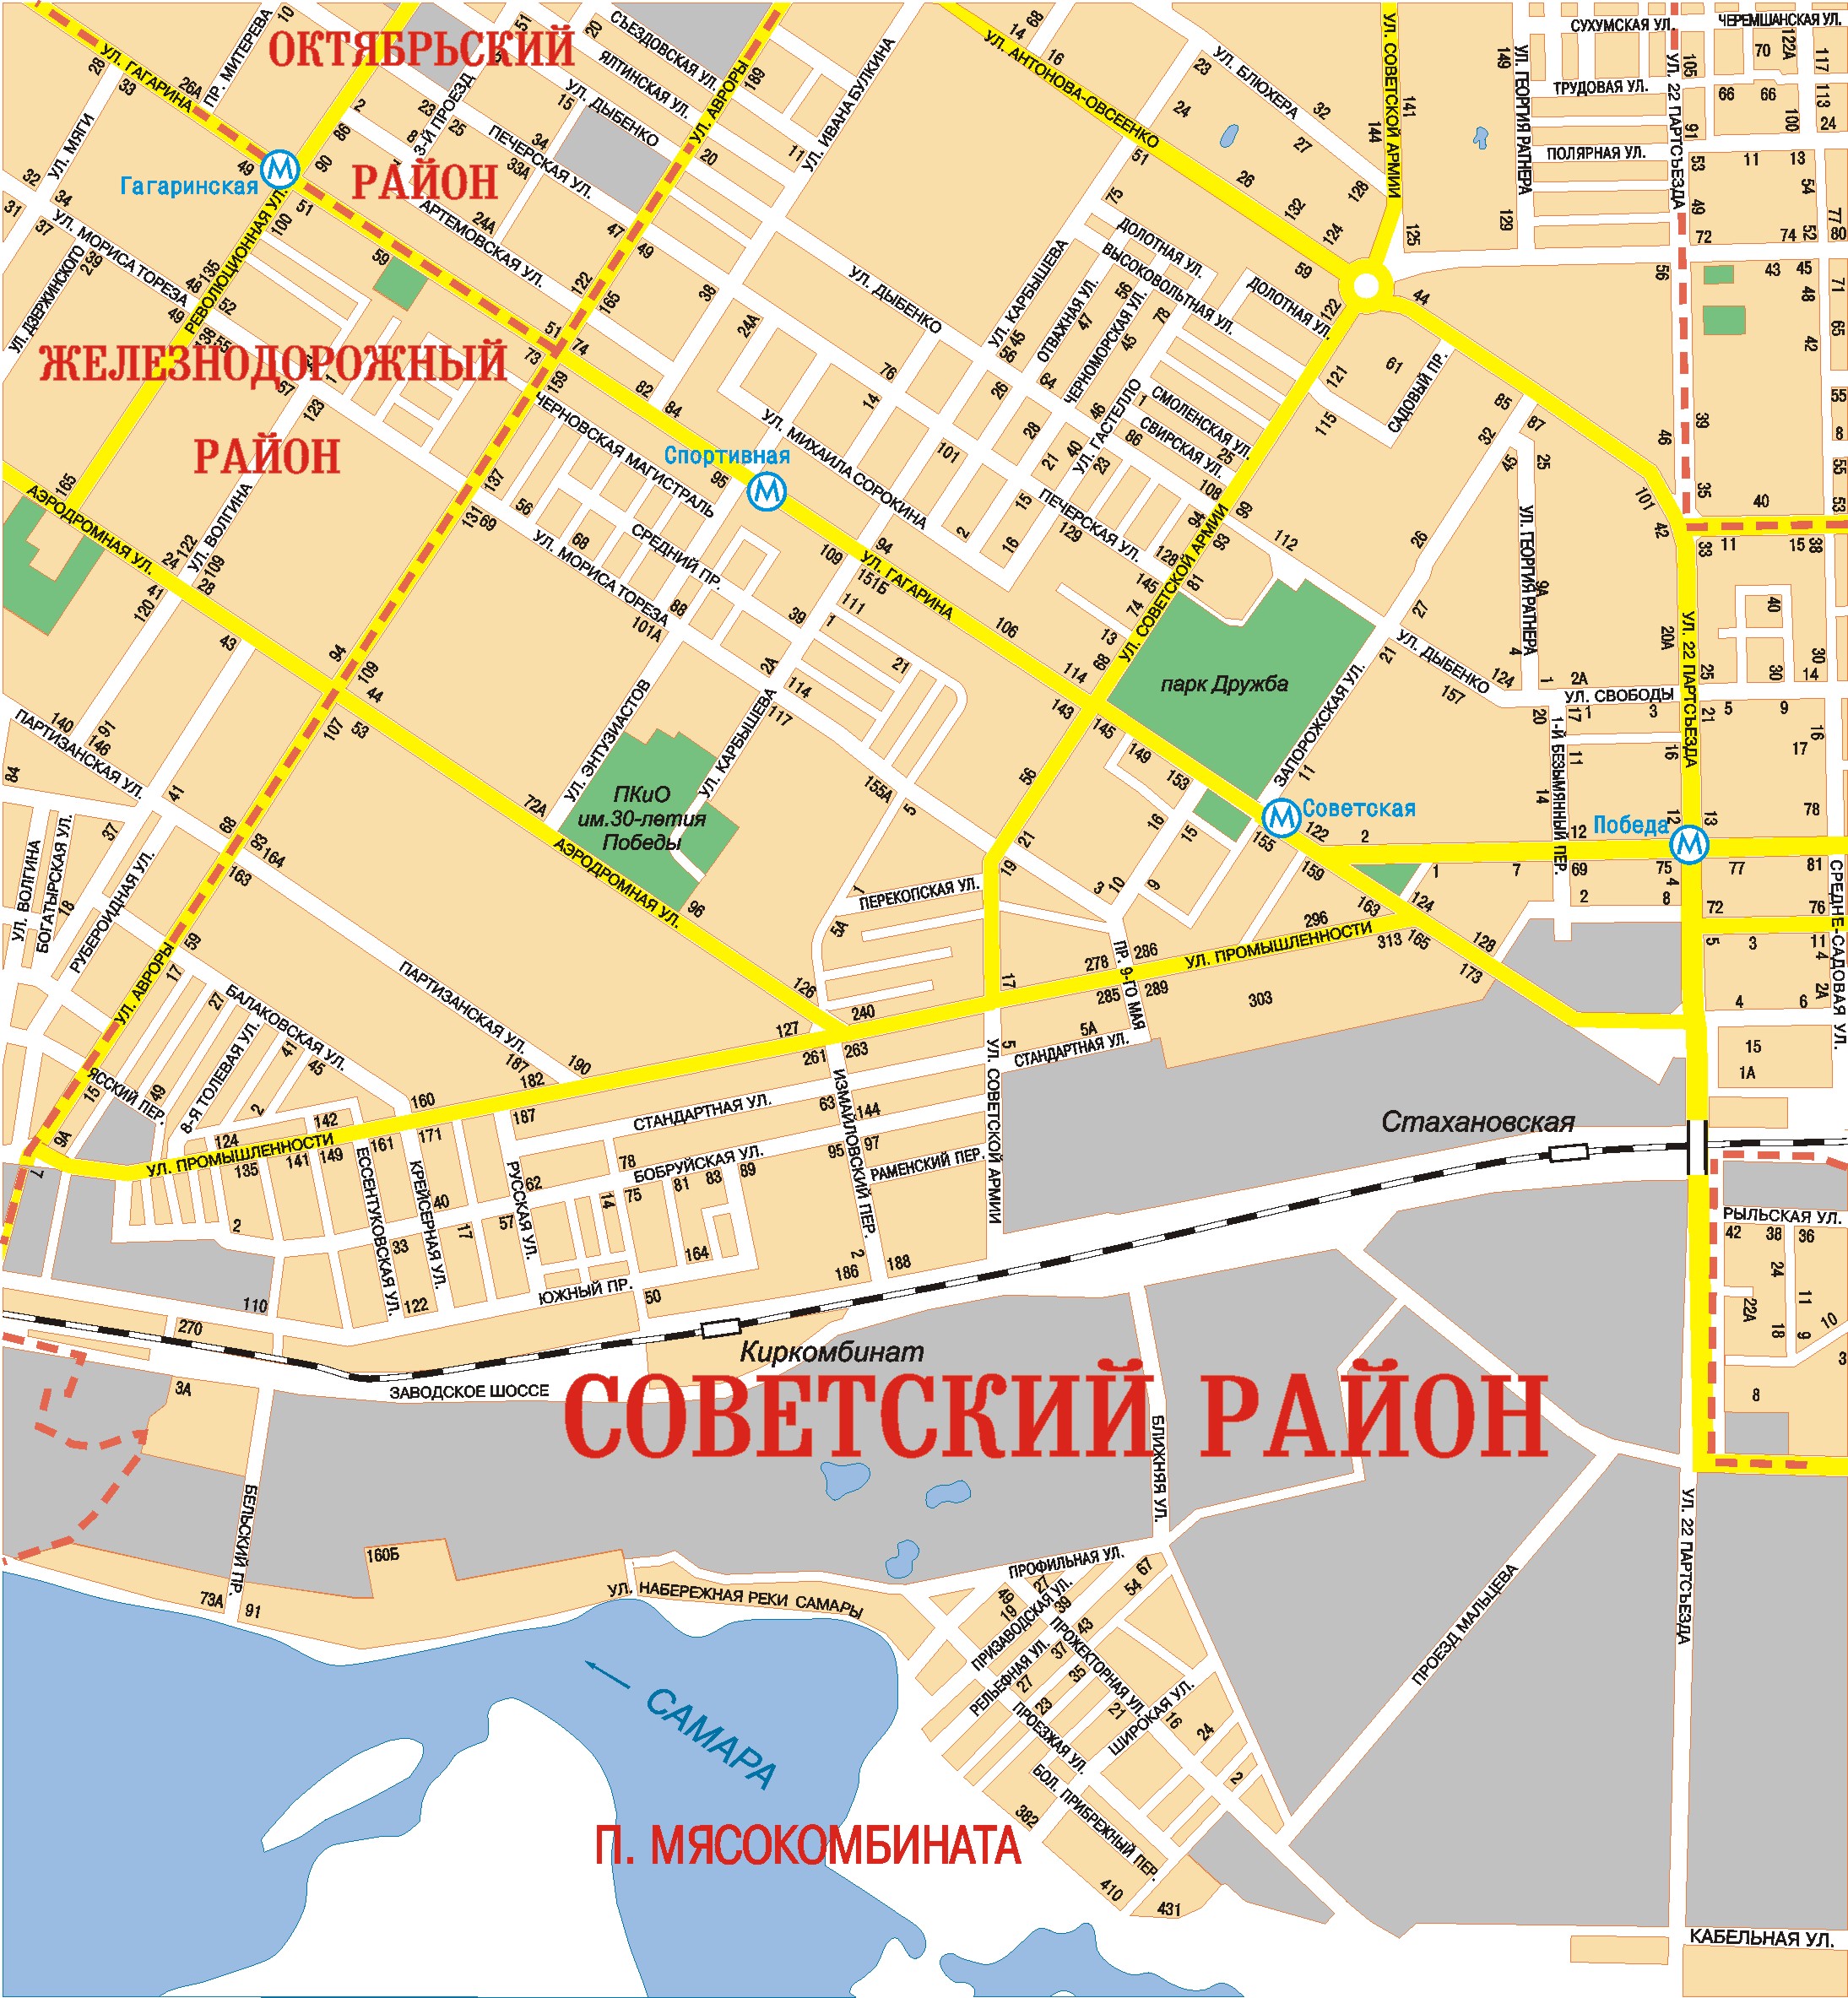 Карта советского района с улицами